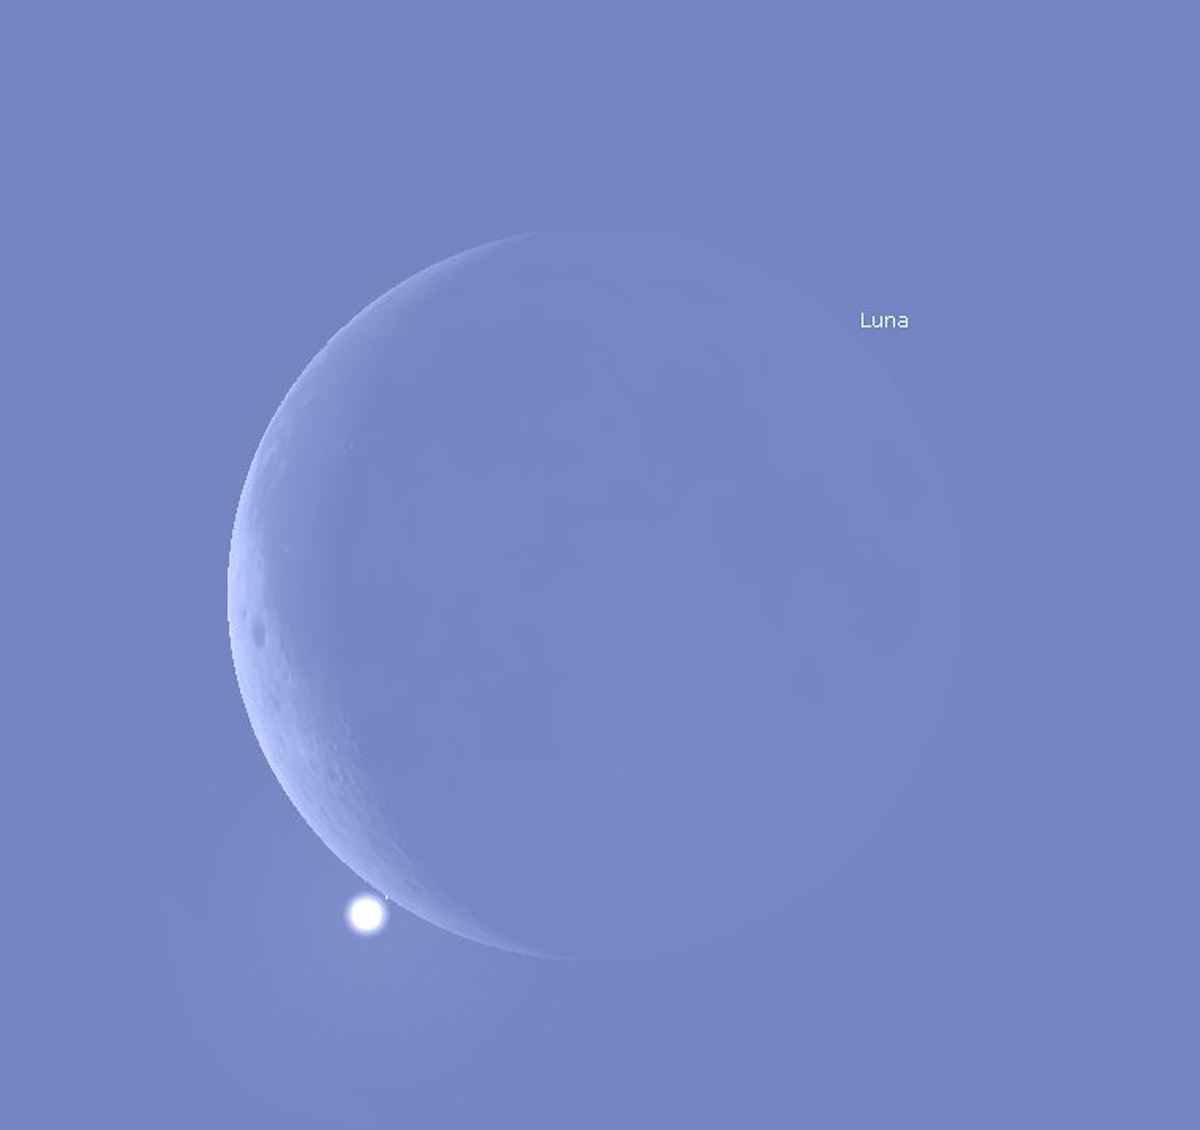 Venere e la Luna, attorno alle 11.00 del mattino del 9 novembre, appena prima dell’occultazione. Immagine generata con il software Stellarium (https://stellarium.org).